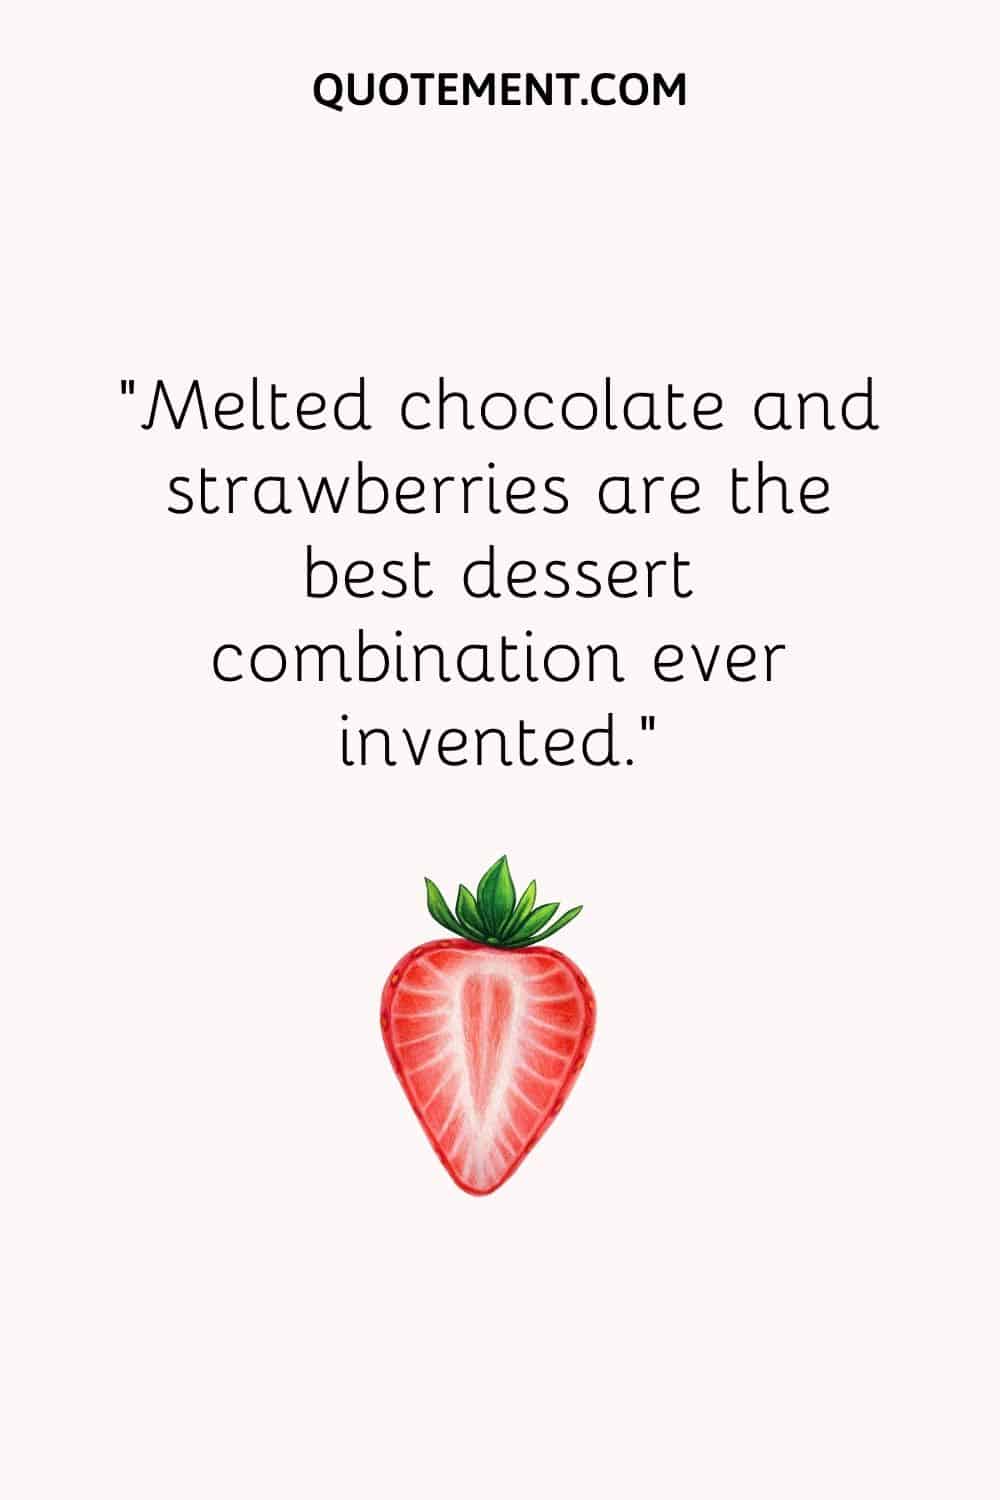 El chocolate fundido y las fresas son la mejor combinación de postres jamás inventada